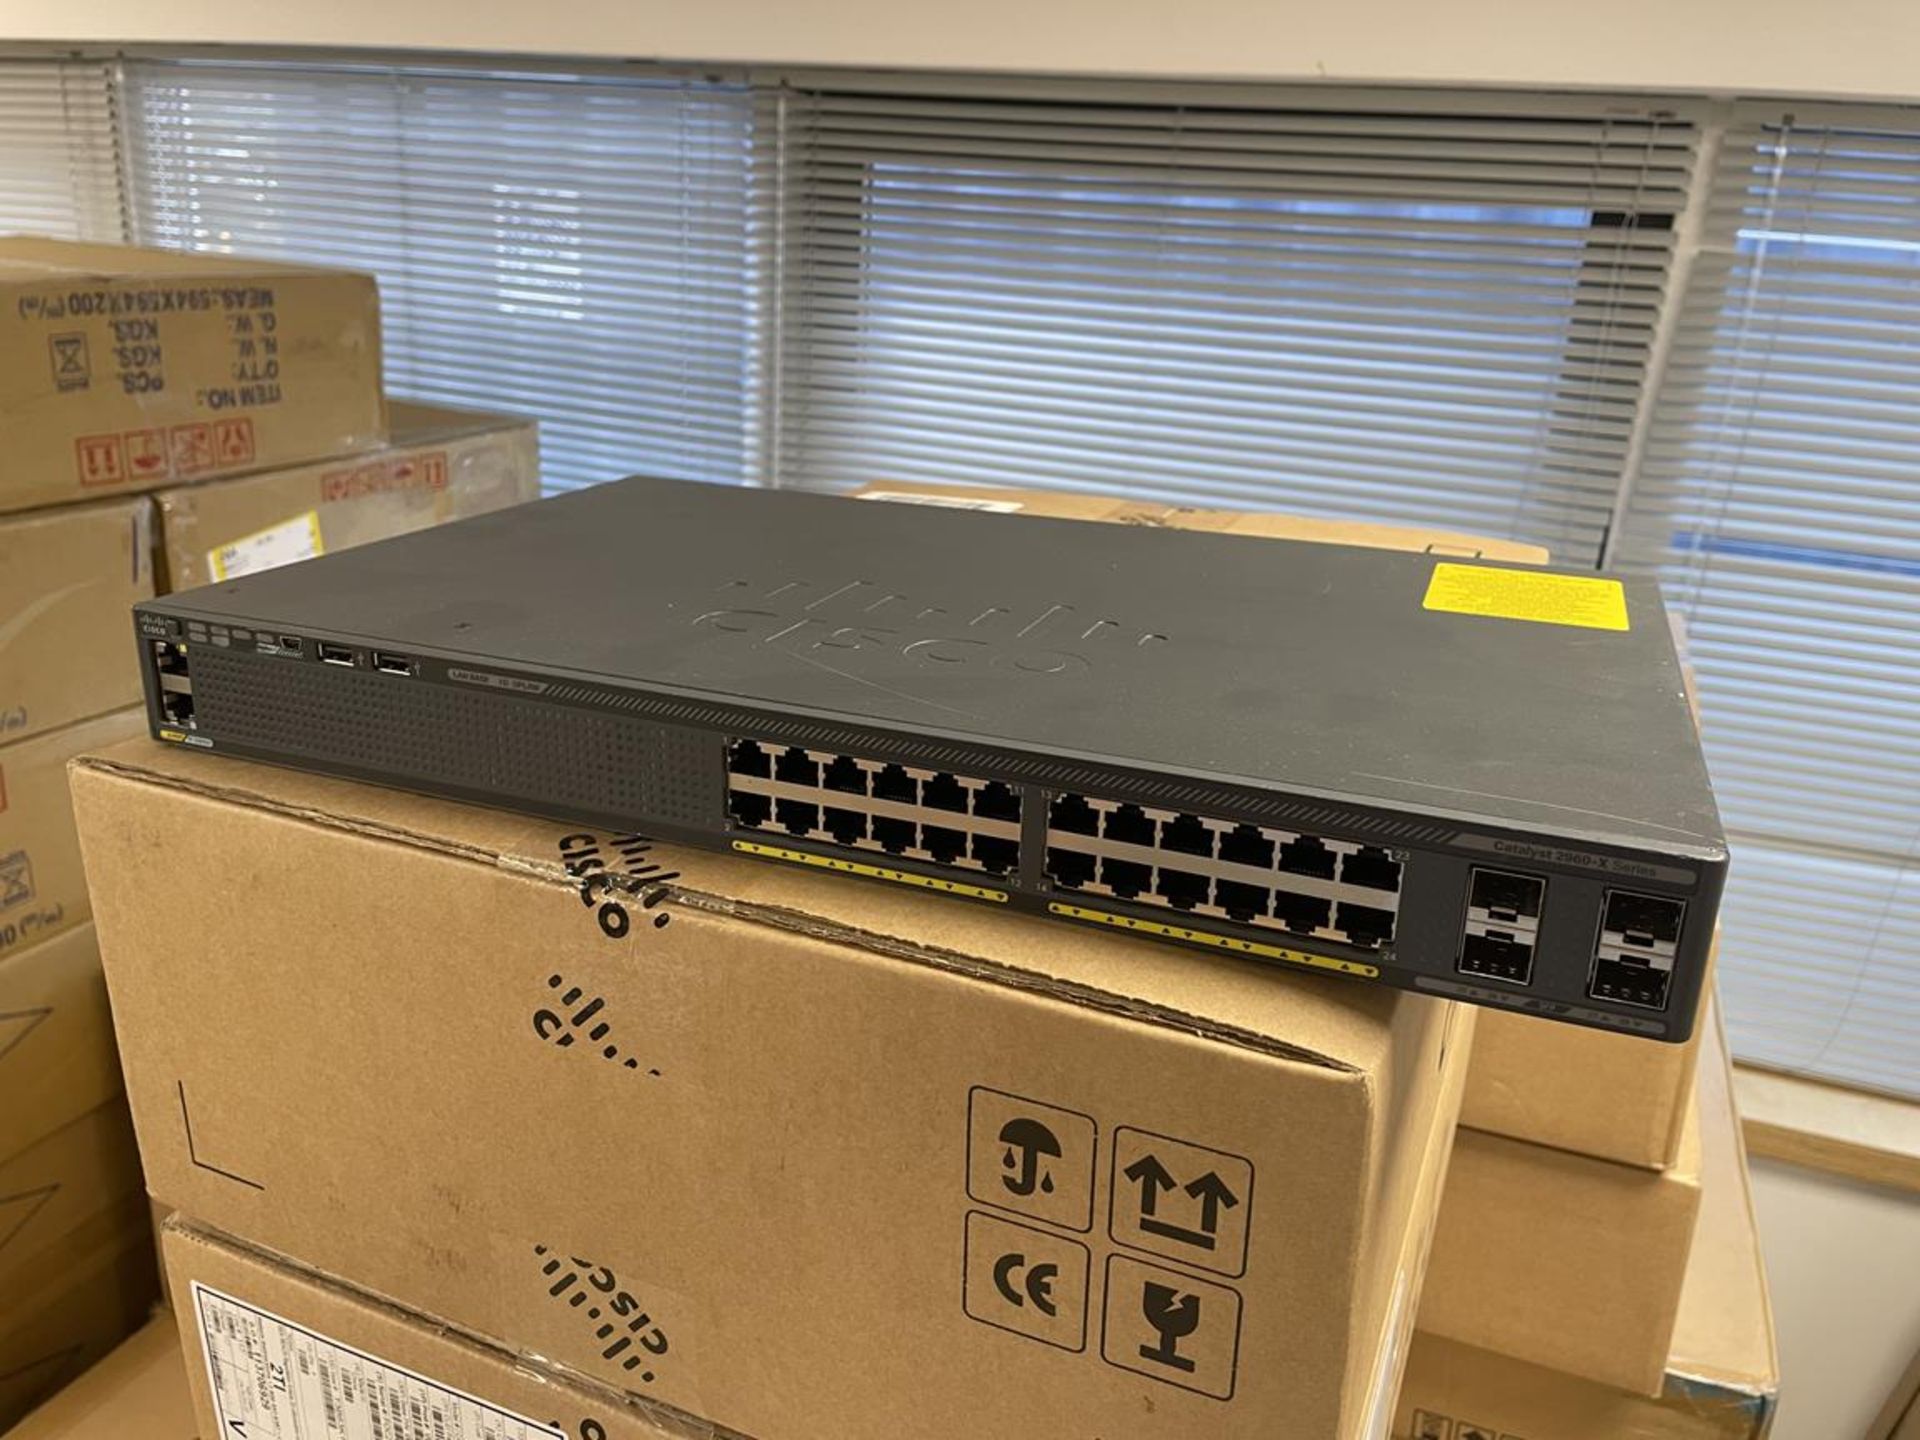 16x Cisco LAN Base 1G Uplink Catalyst 2960-X Series Network Switches (GB REF#201)